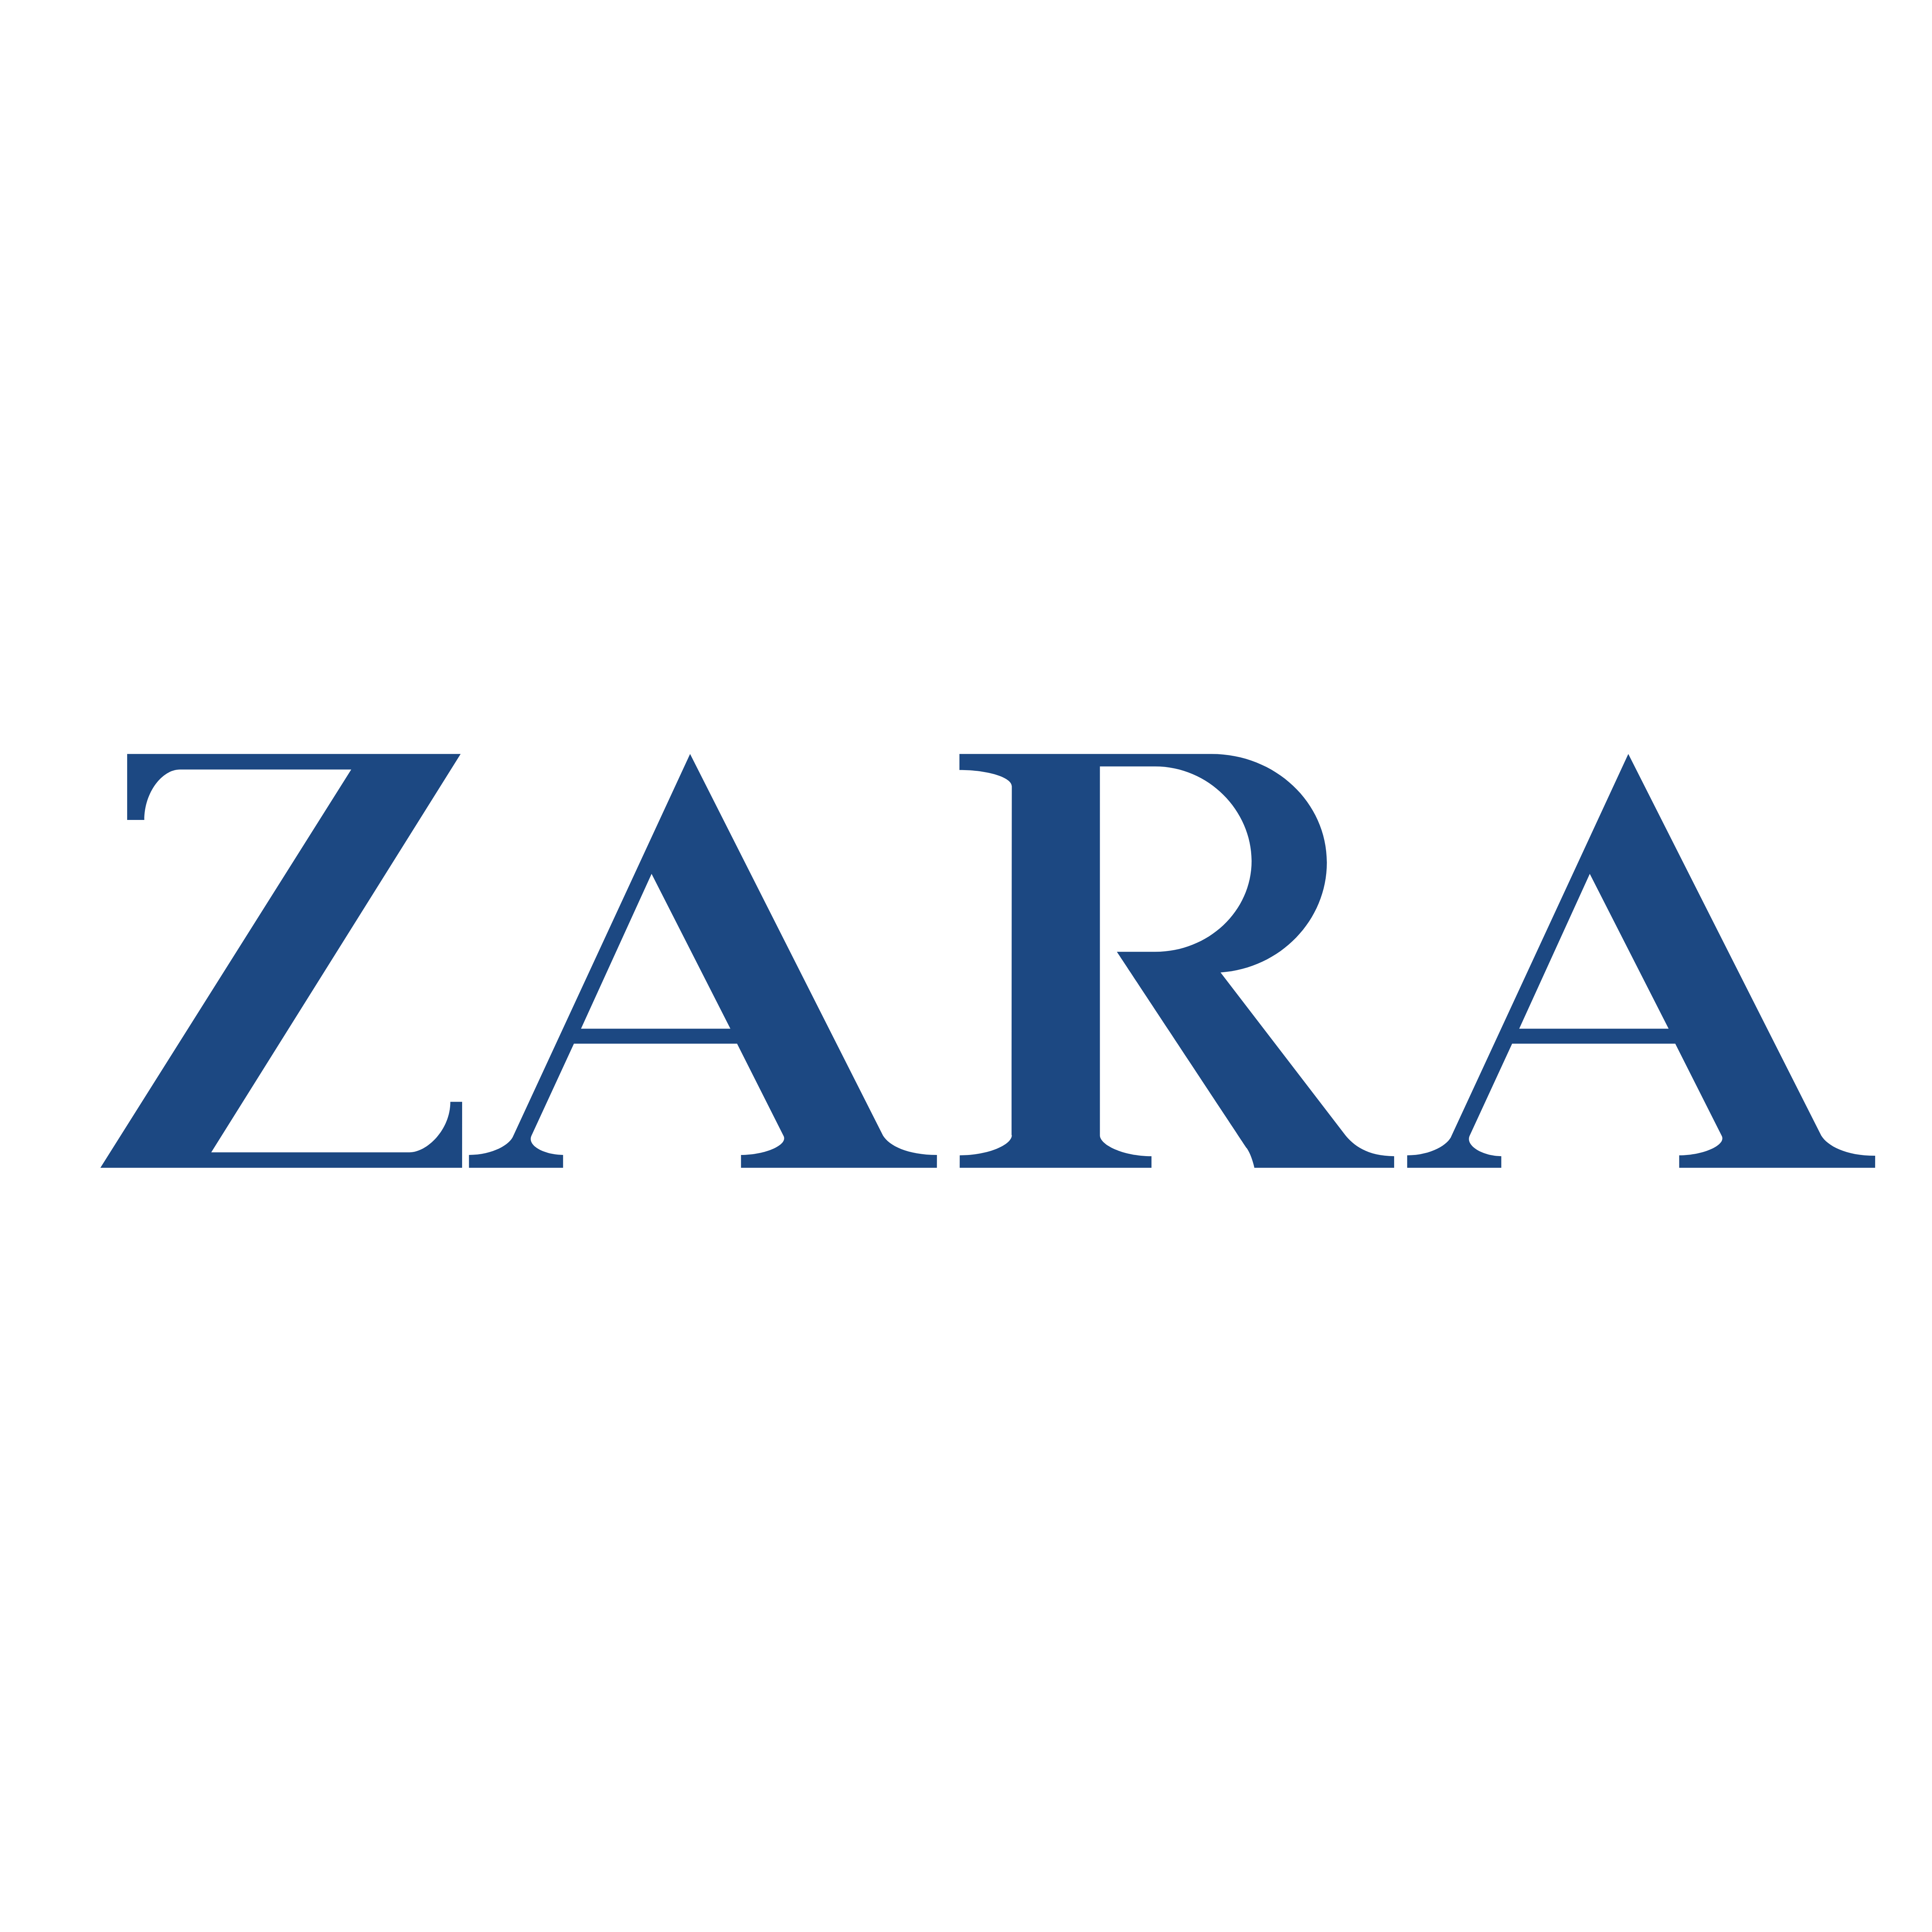 Zara – Logos Download - Zara, Transparent background PNG HD thumbnail